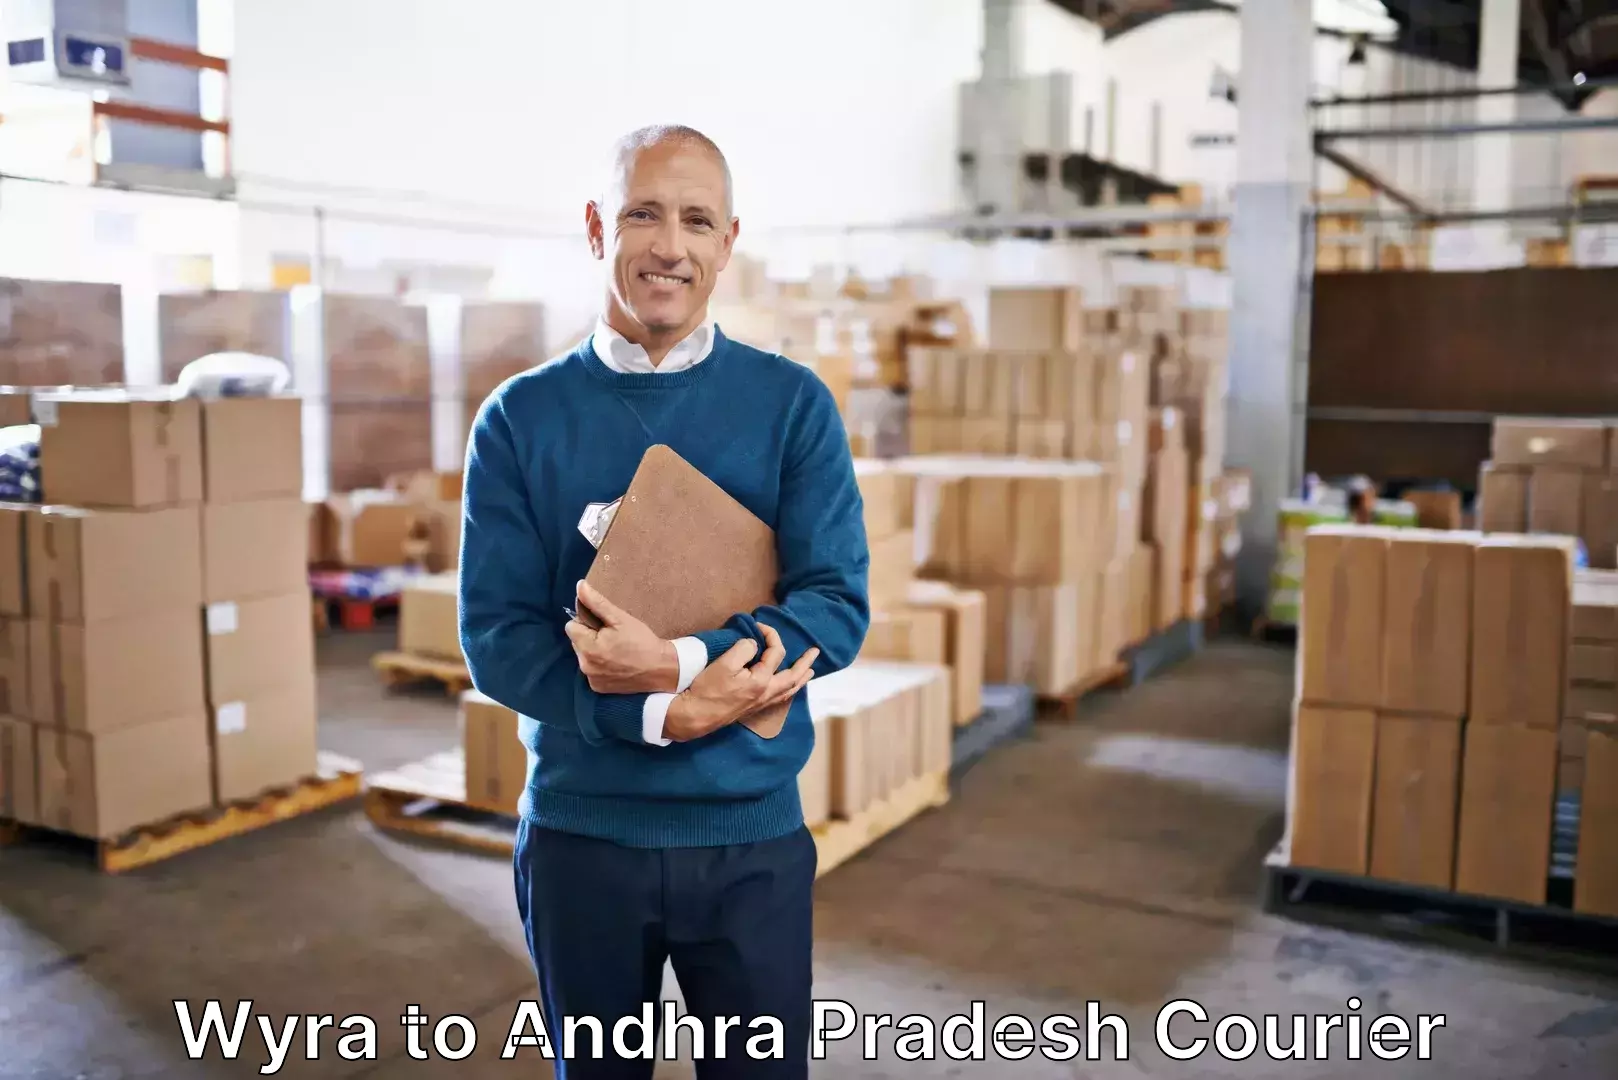 Baggage transport scheduler Wyra to Andhra Pradesh